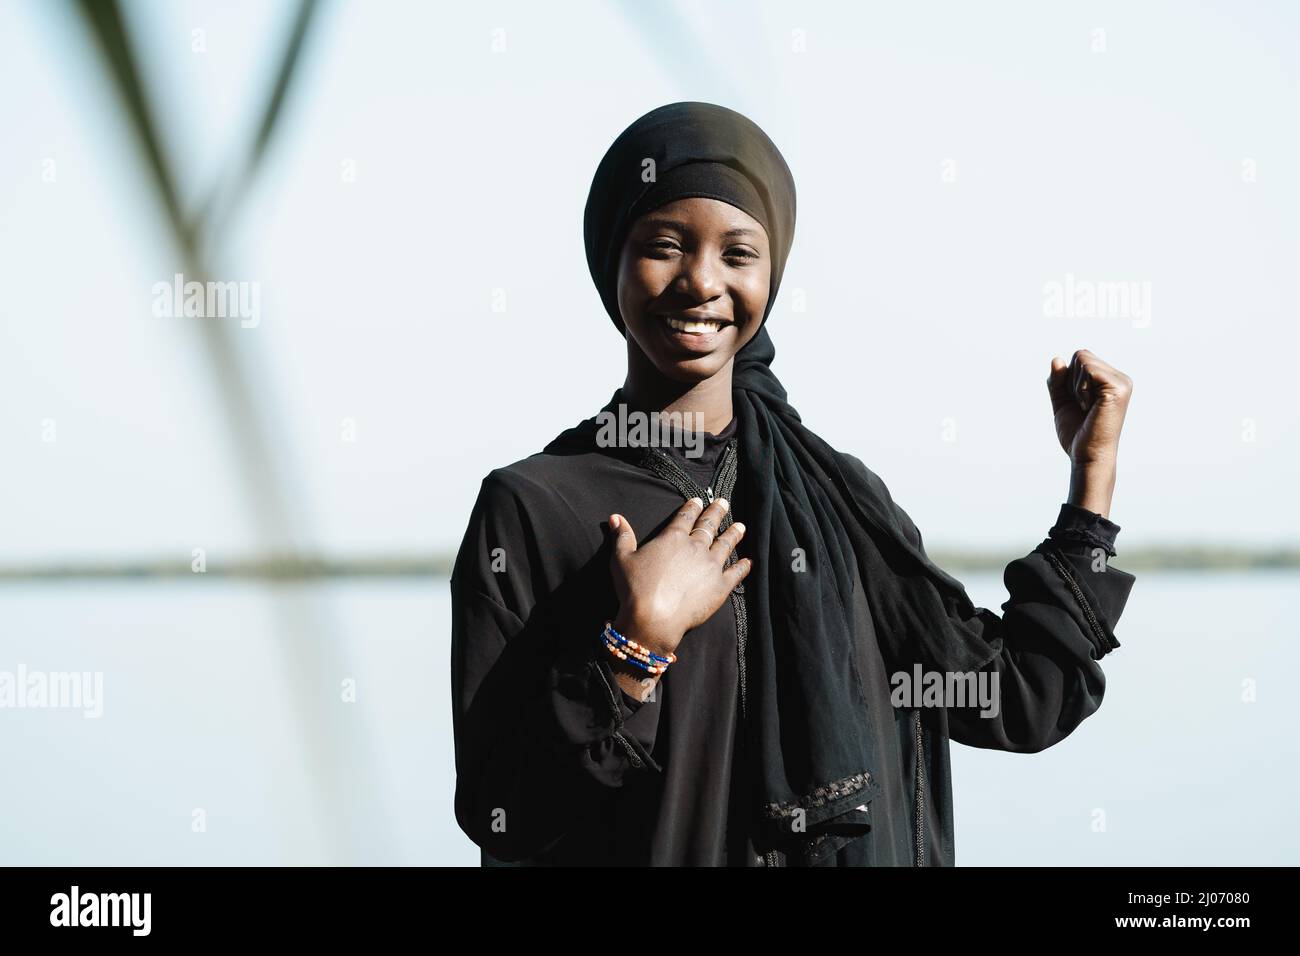 Vue de face d'une jeune fille africaine souriante, d'une main sur la poitrine et d'un poing levé, symbolisant la puissance, la confiance et l'estime de soi des femmes Banque D'Images